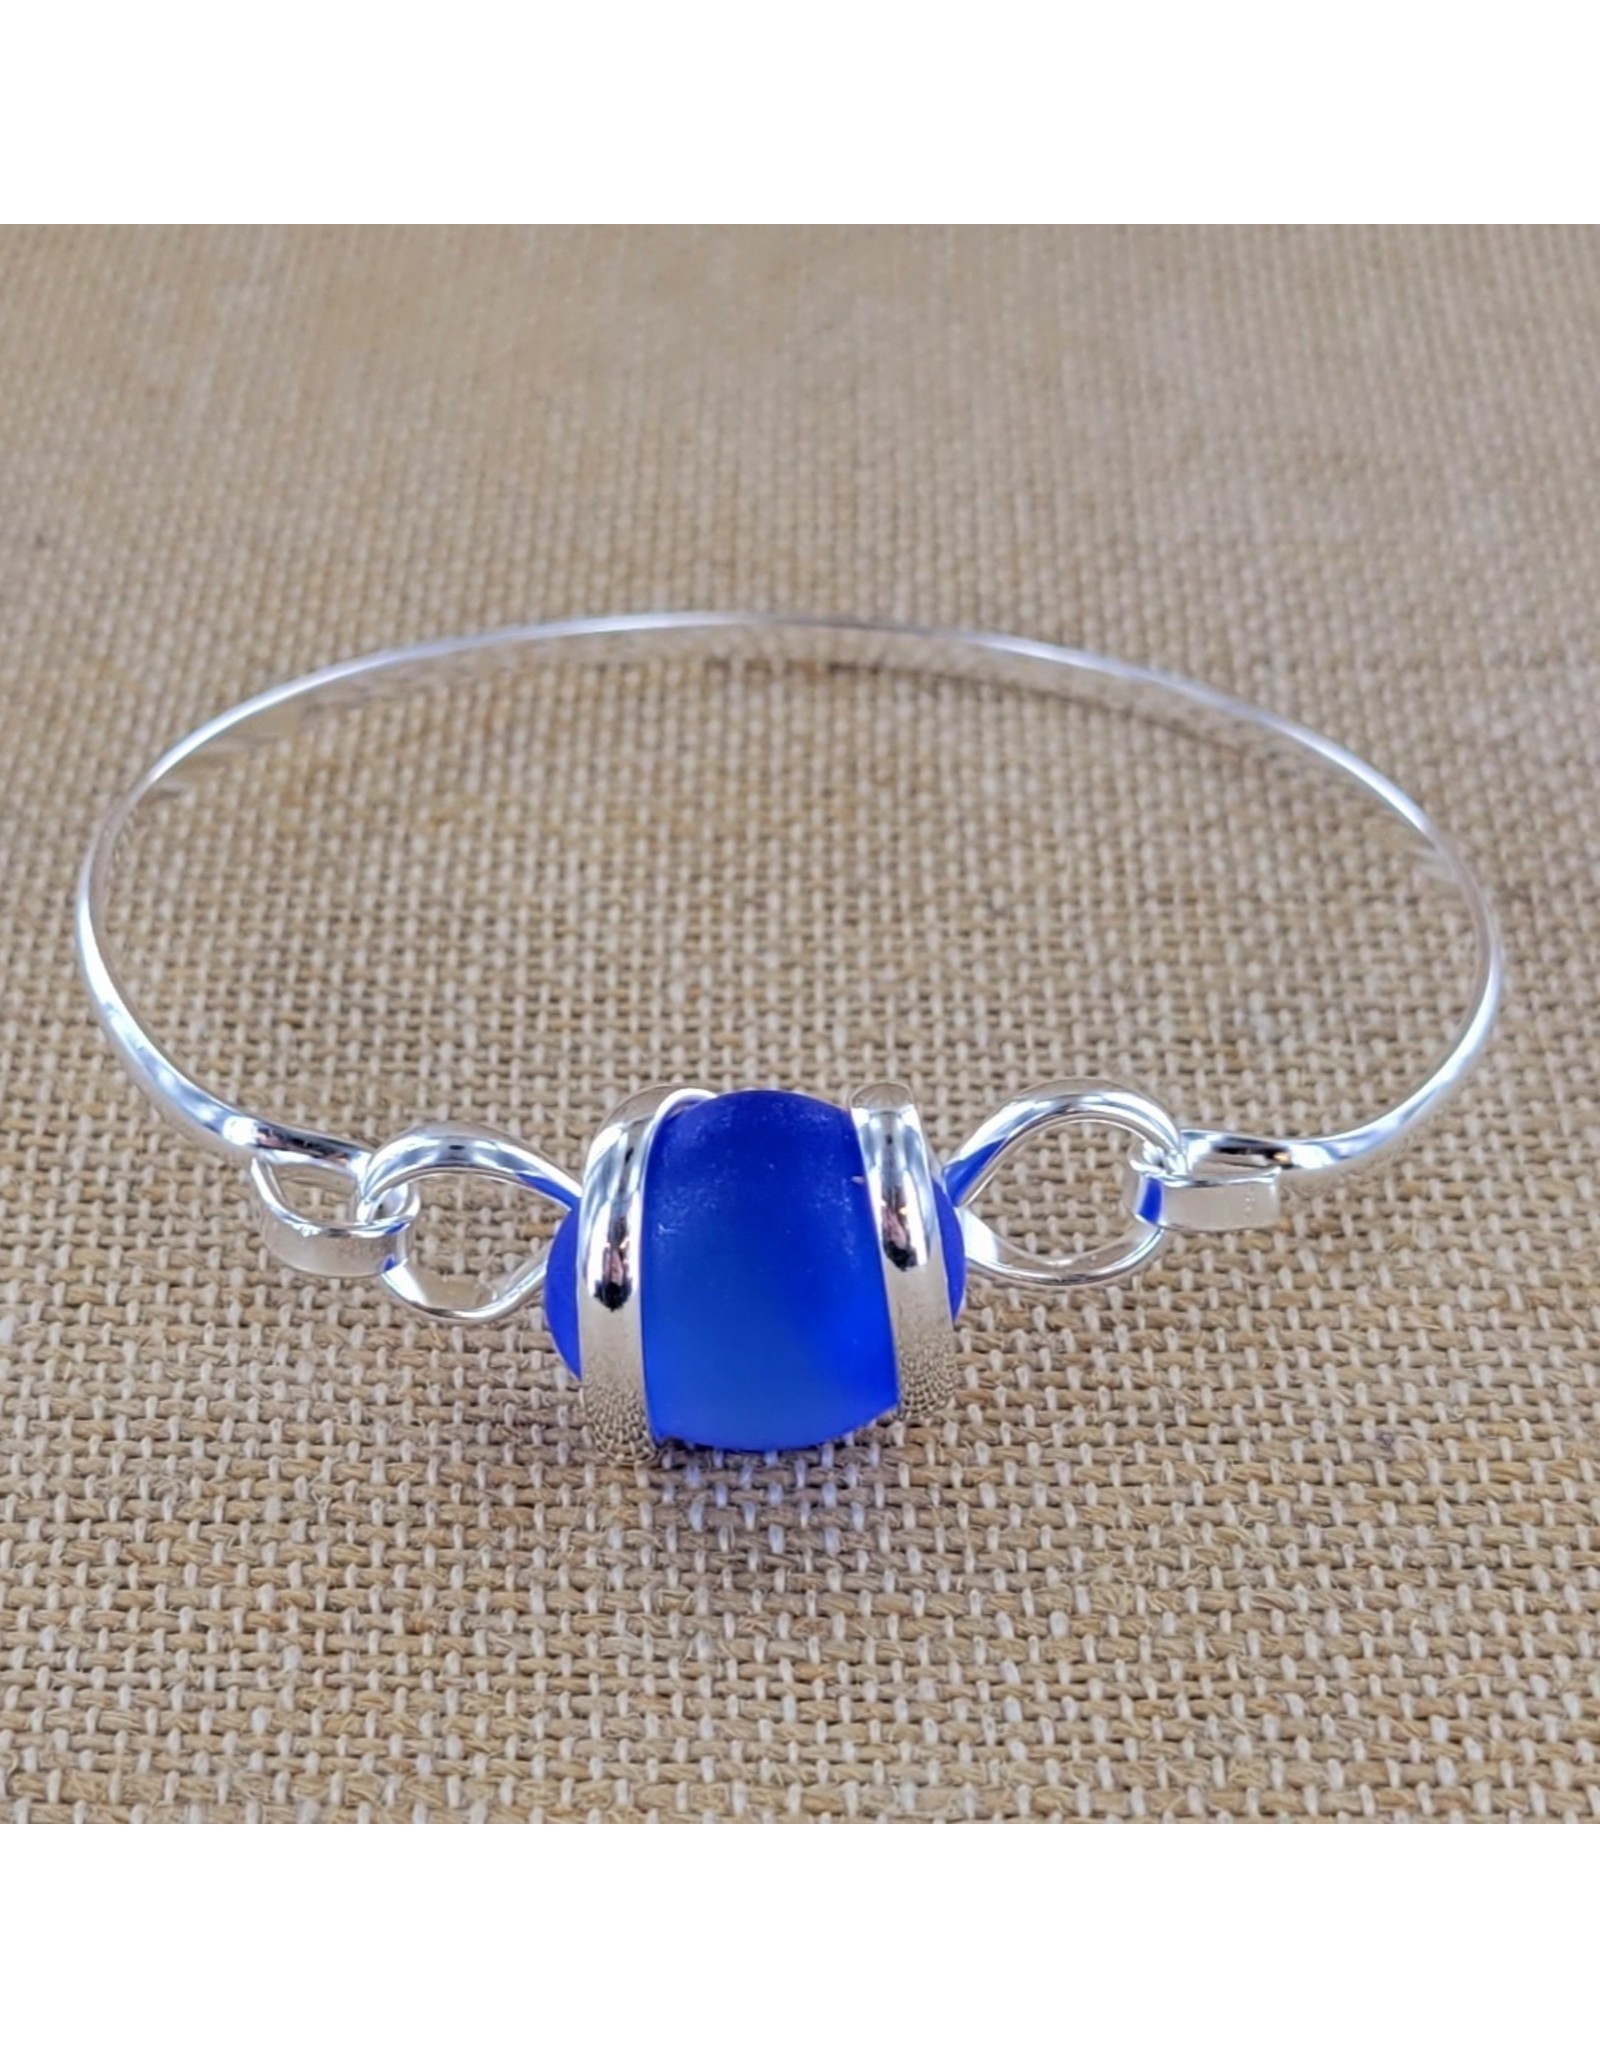 Sadie Green's Jewlery Cobalt Sea Glass Bracelet